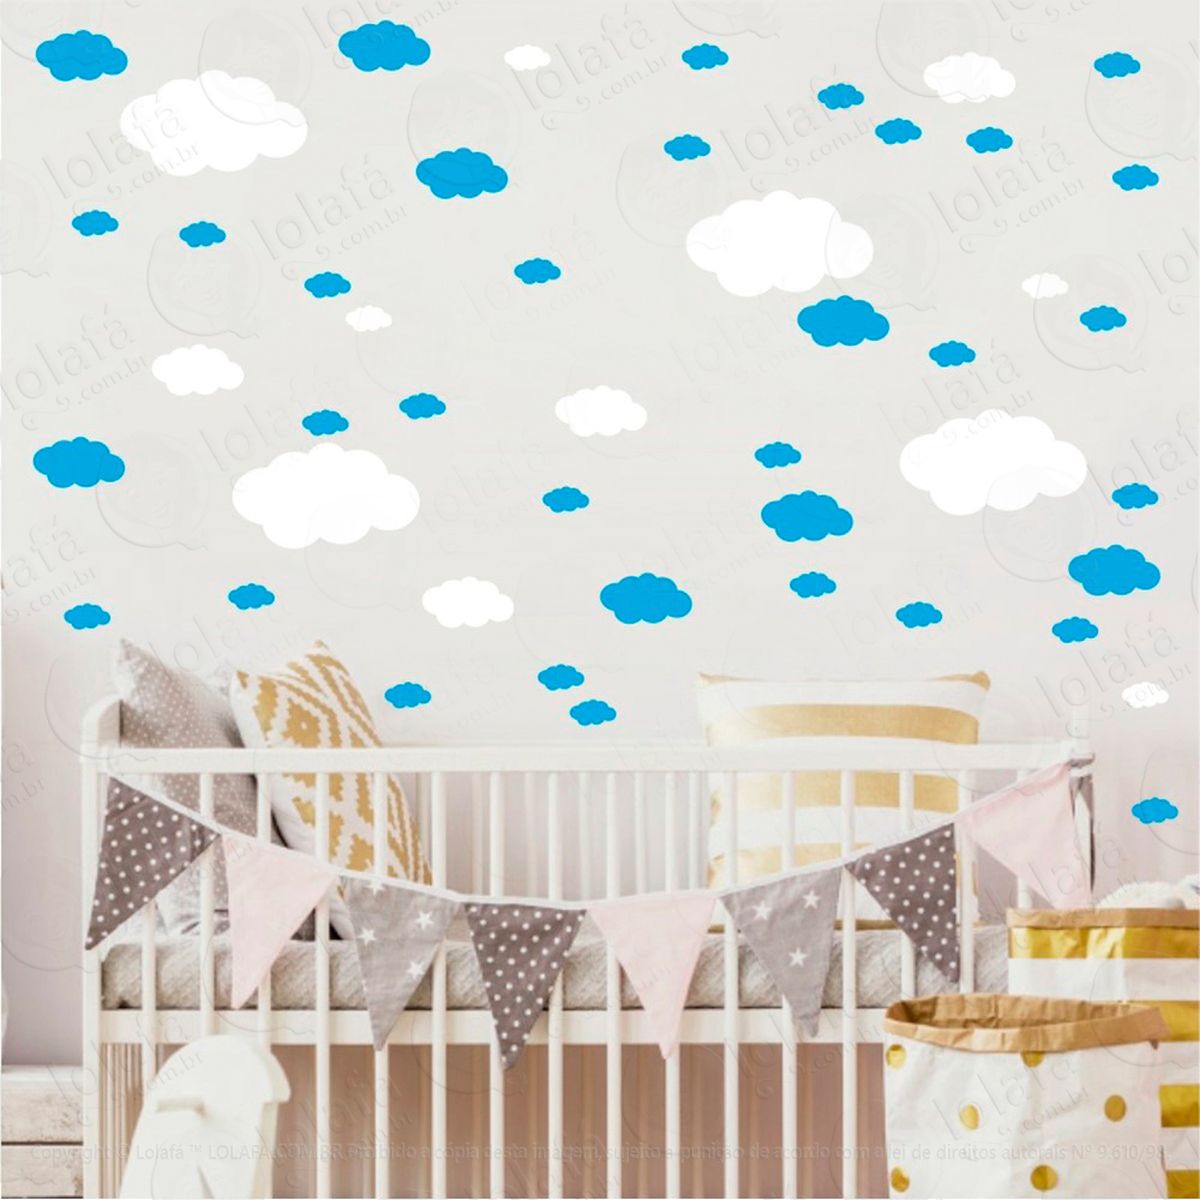 adesivos nuvens 62 peças adesivos para quarto de bebê infantil - mod:981